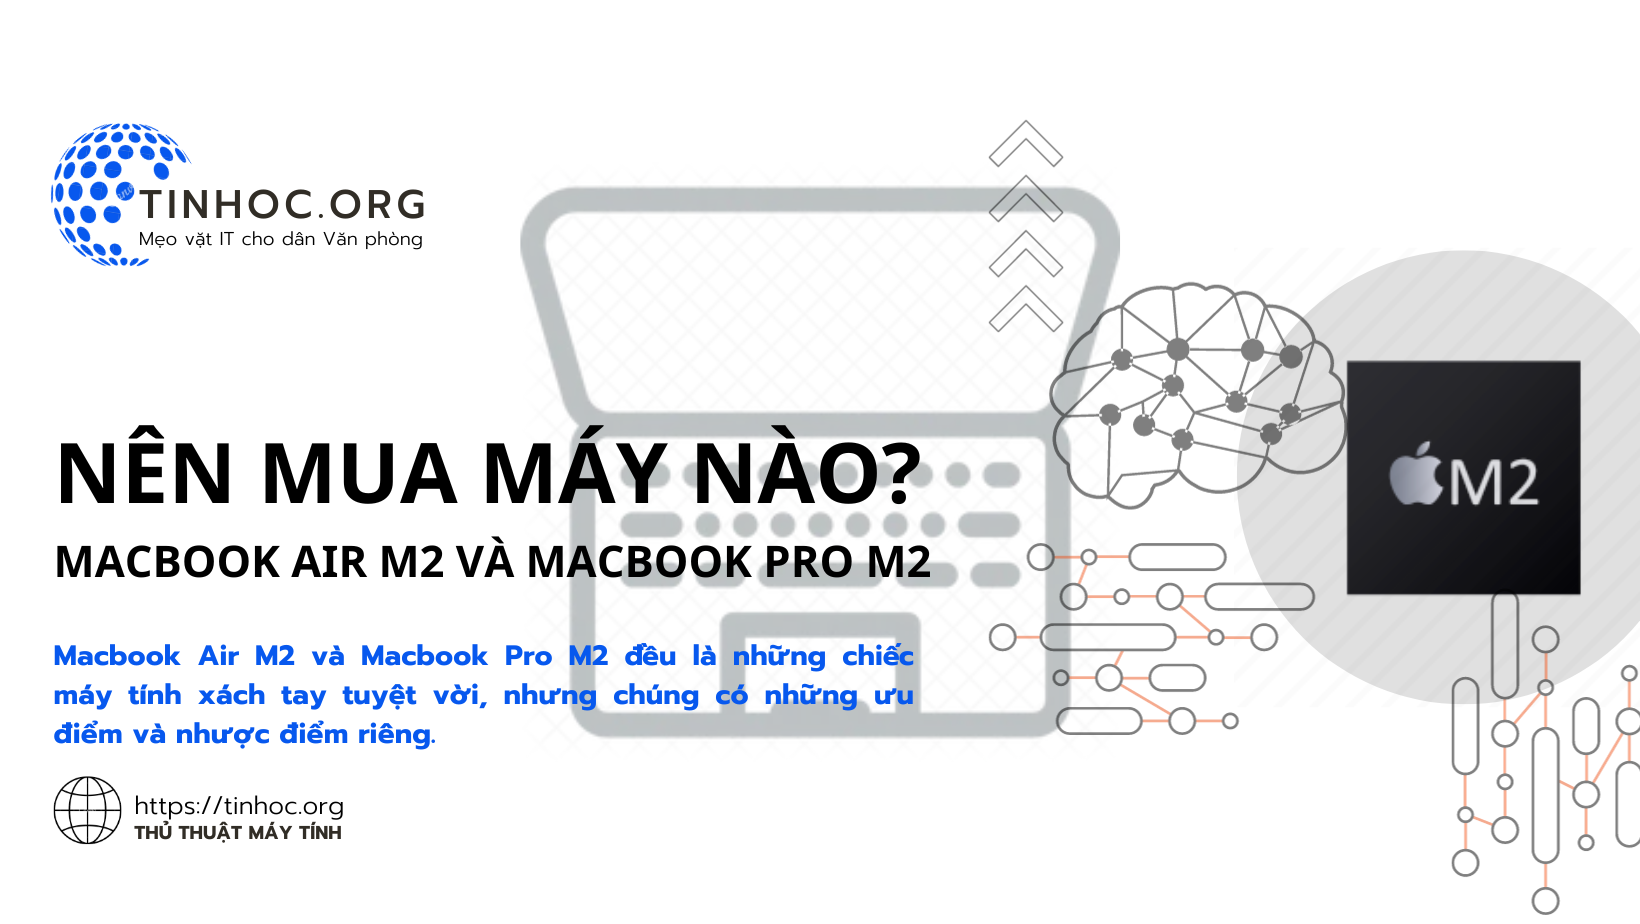 Macbook Air M2 và Macbook Pro M2 đều là những chiếc máy tính xách tay tuyệt vời, nhưng chúng có những ưu điểm và nhược điểm riêng.